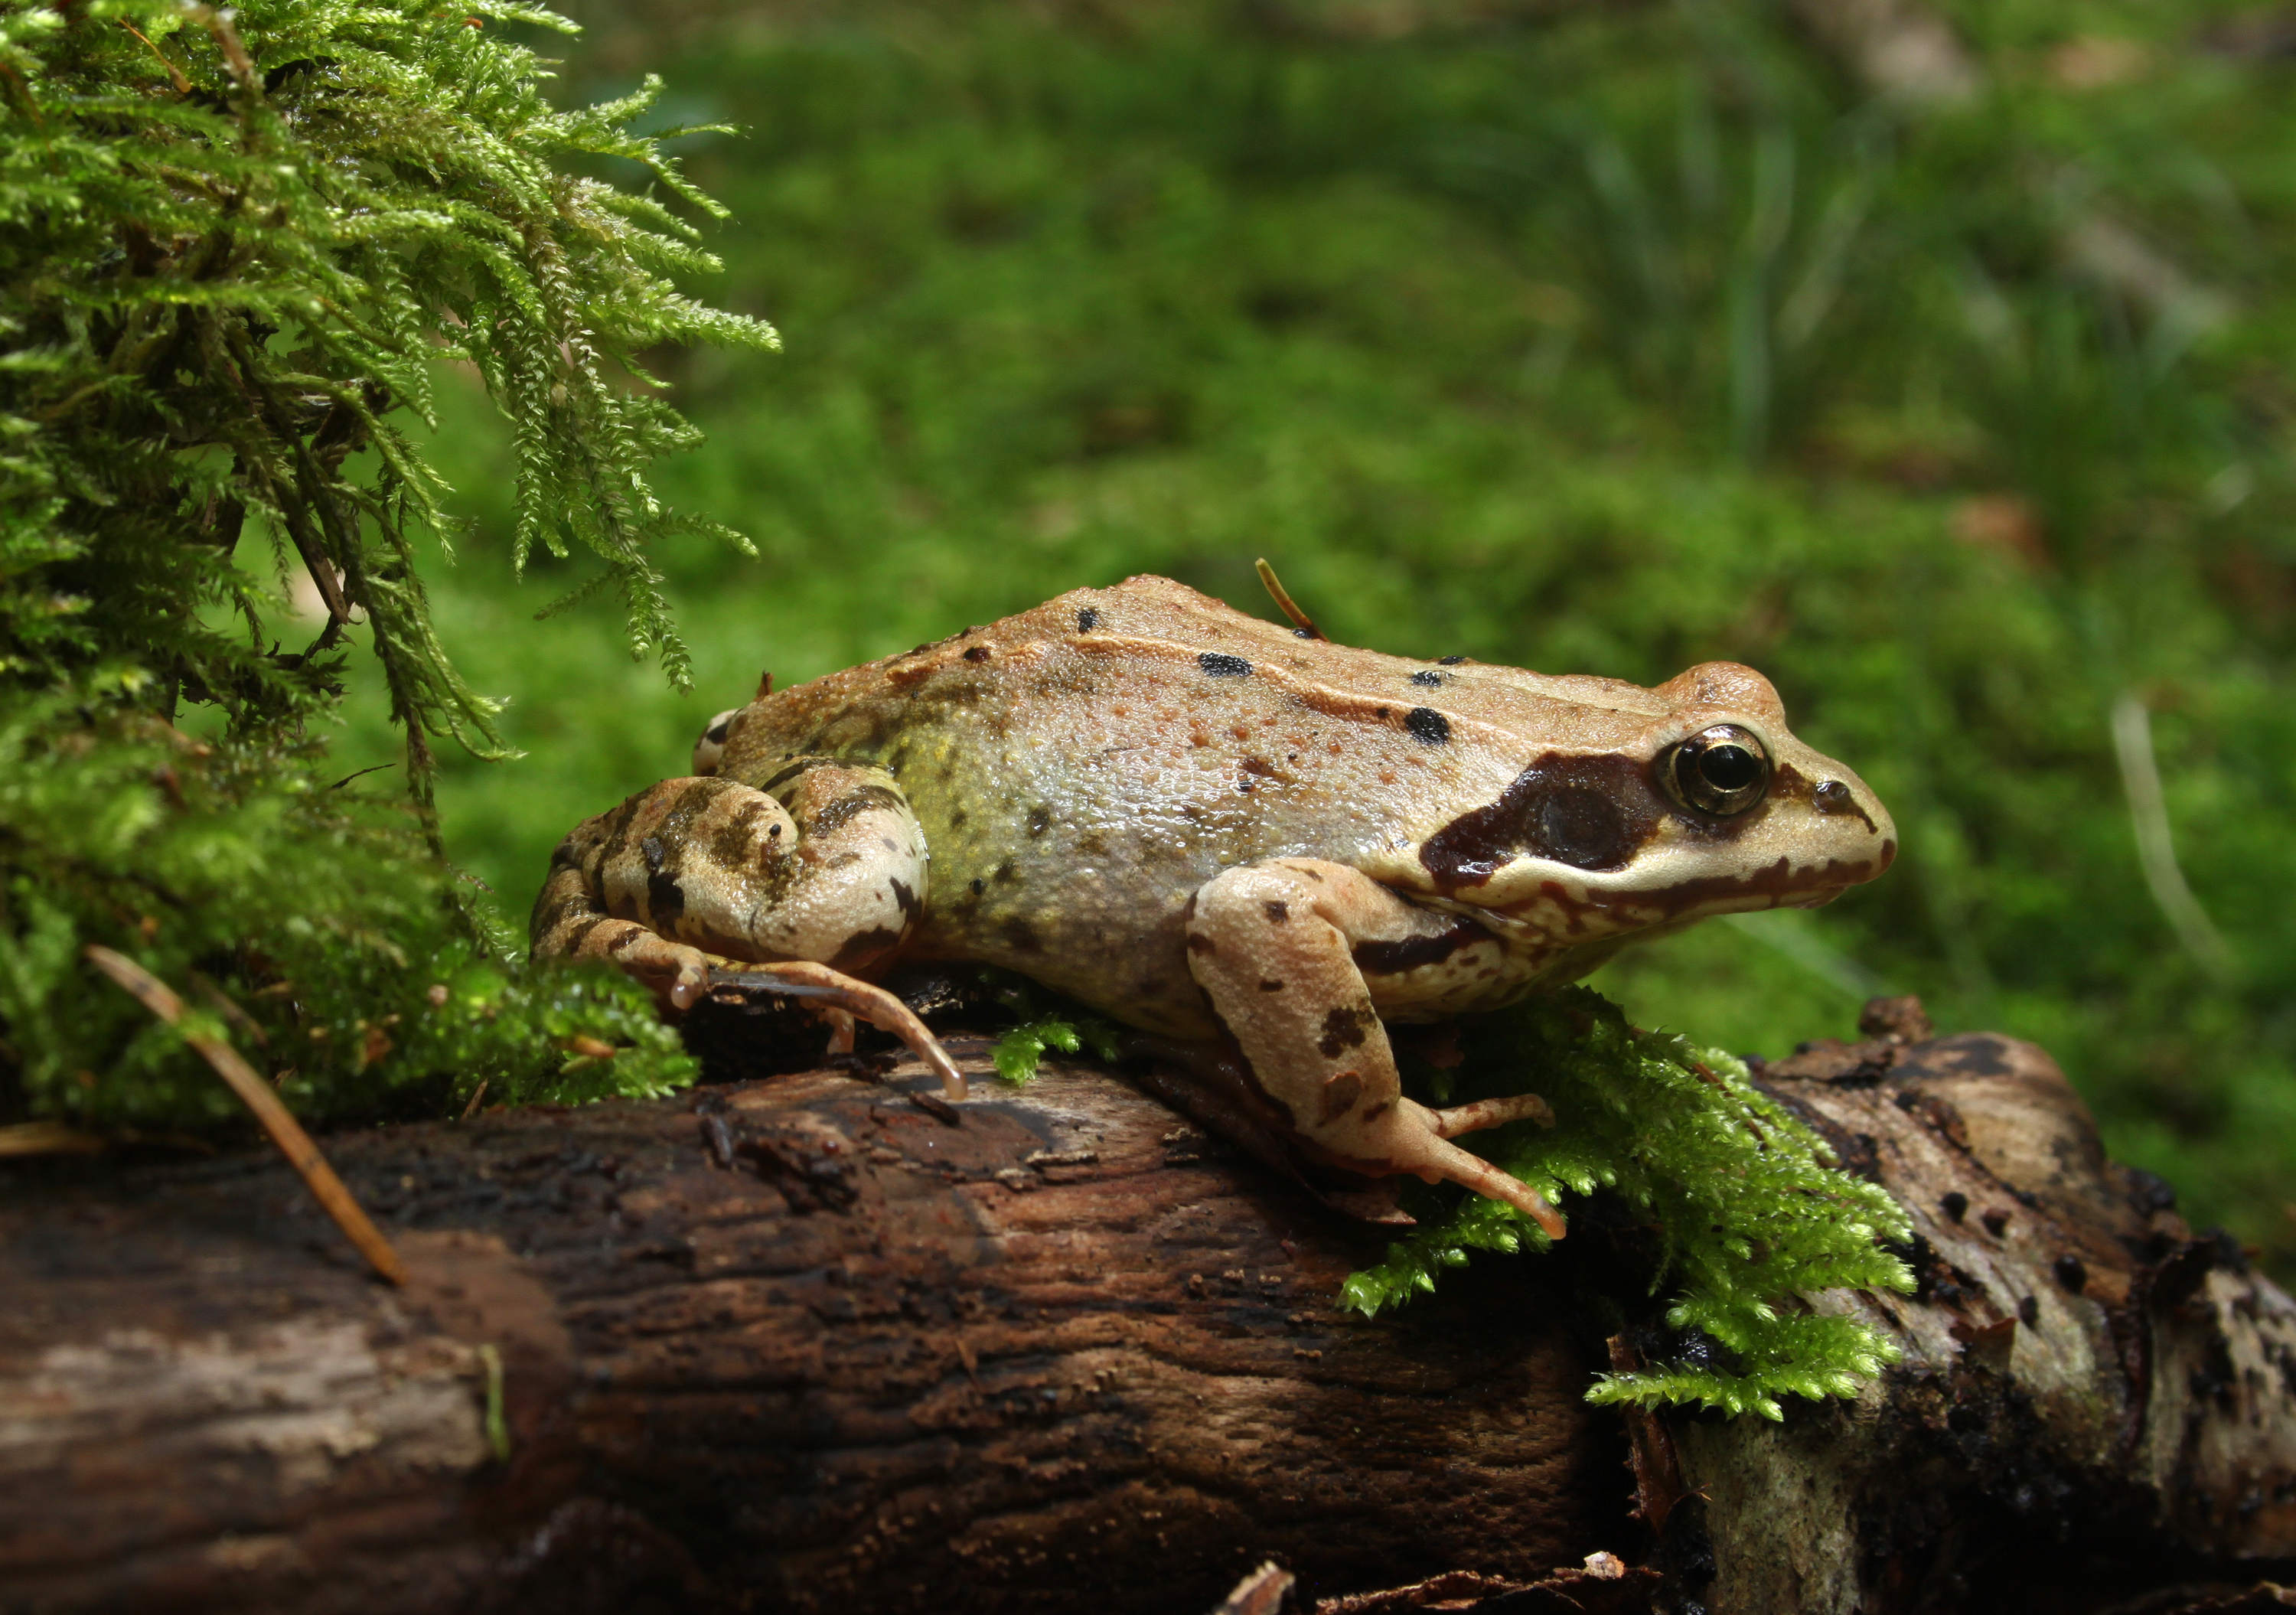 Cartel de Conoce los anfibios del Parque natural Saja-Besaya